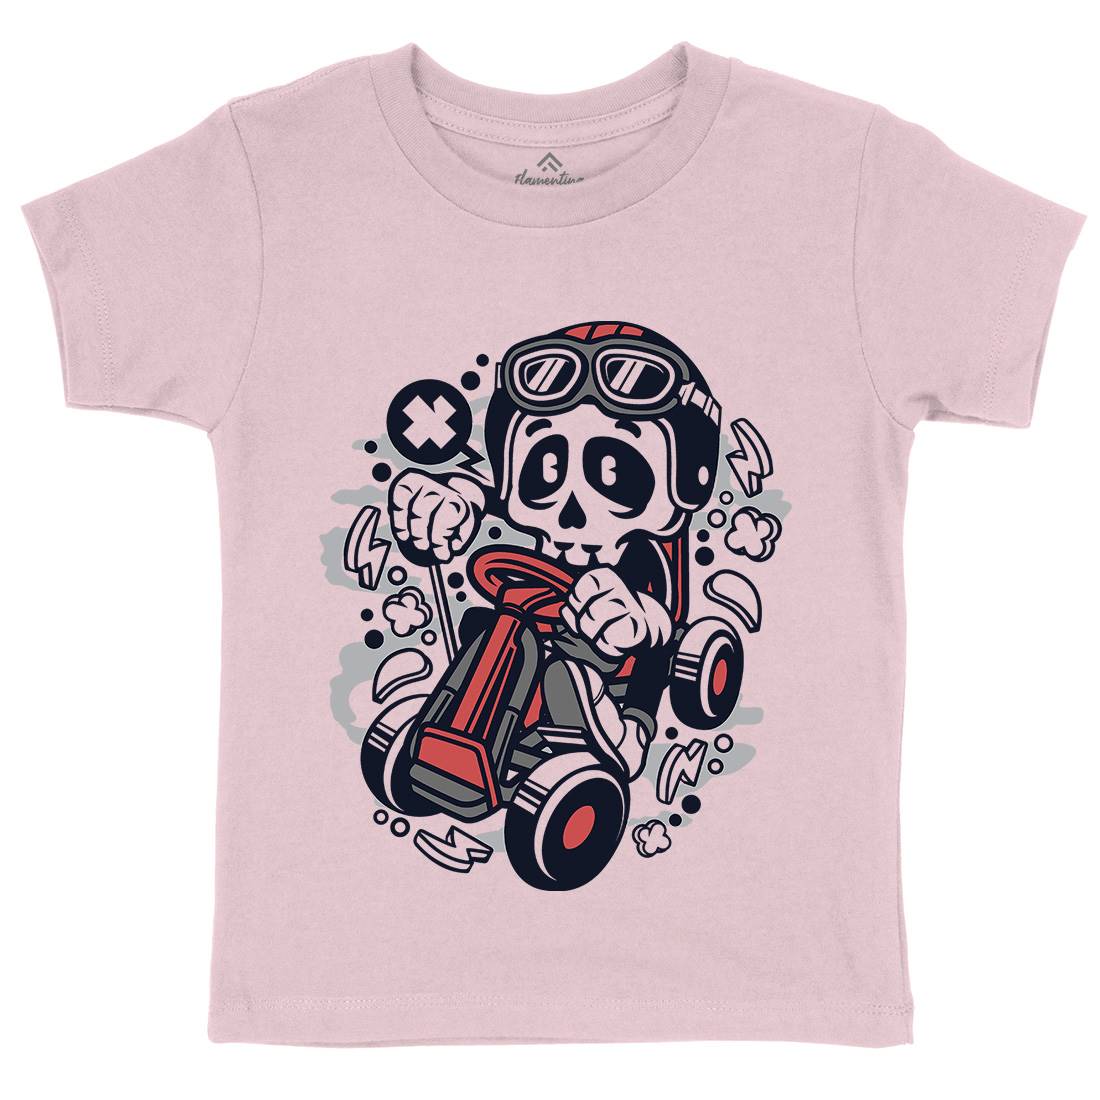 Go-Kart Skull Kids Organic Crew Neck T-Shirt Sport C124